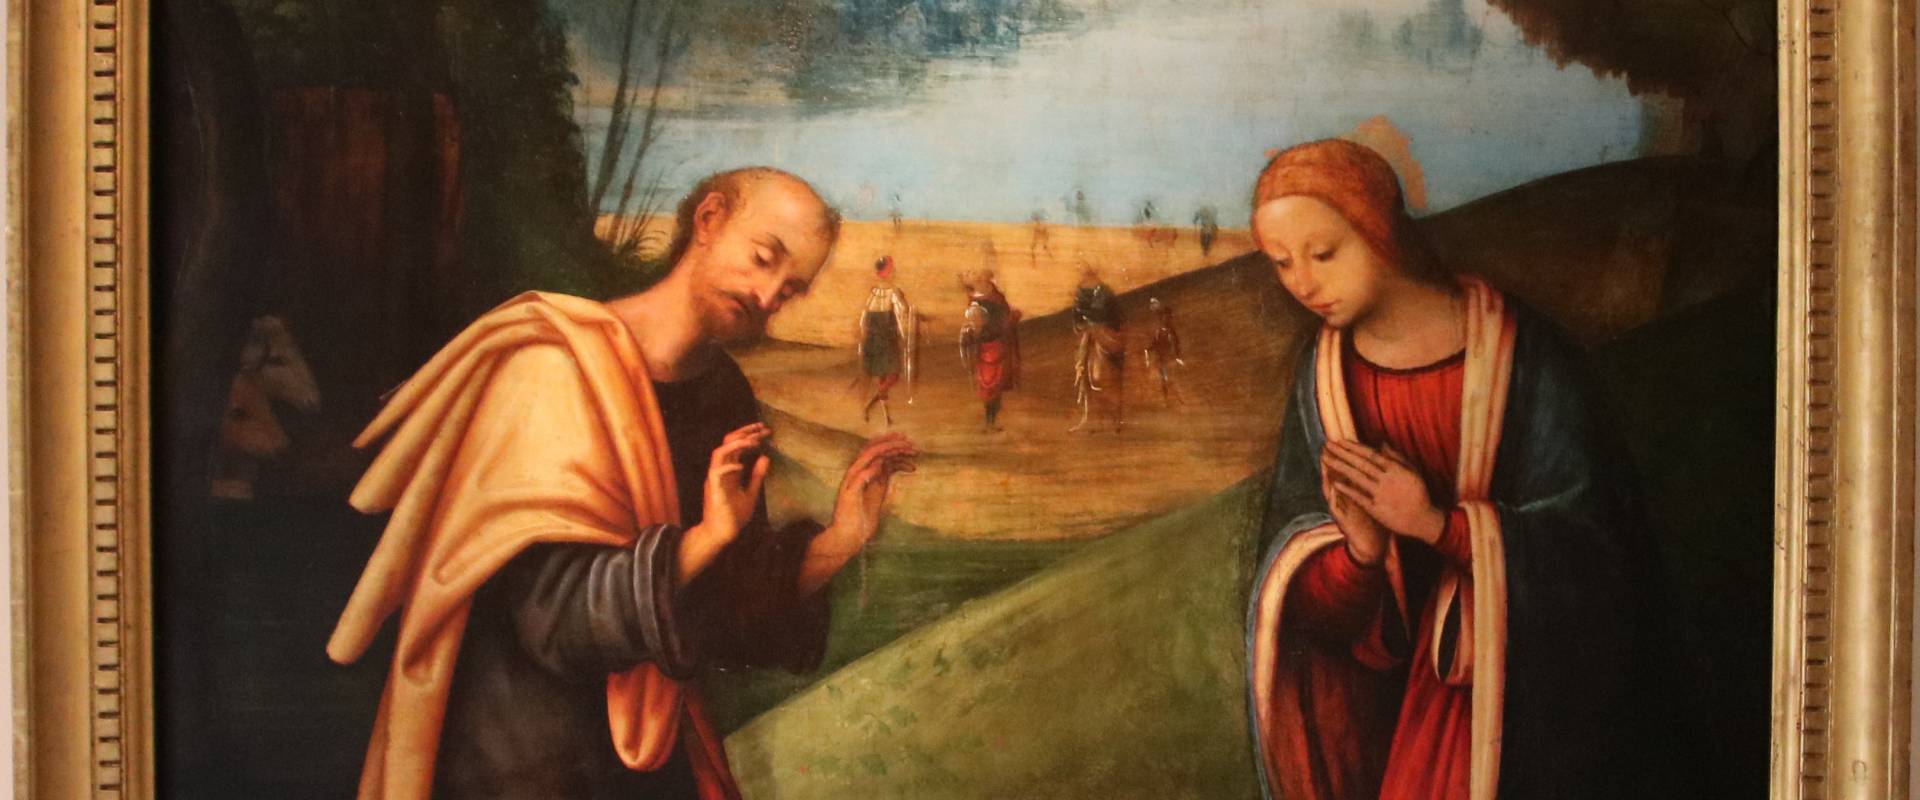 Lorenzo Costa, Adorazione del Bambino con i Magi in lontananza, 1503-1506 photo by Mongolo1984